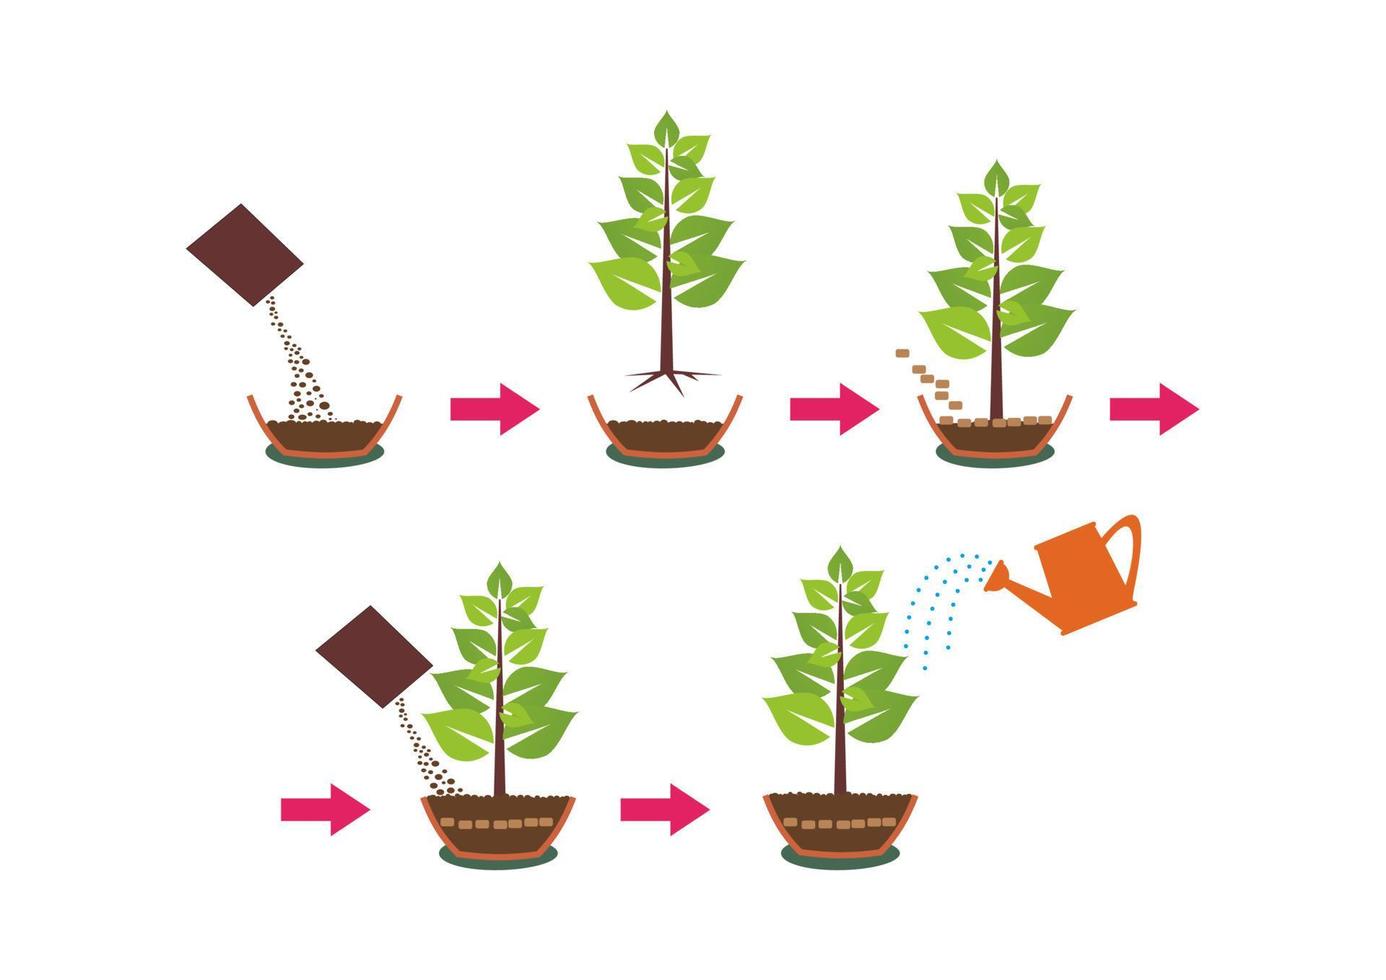 zetten en groeit planten instructie met potten water en zaden. stap door stap instructies voor aanplant zaden van planten vector schetsen van de werkwijze van planten. boom groeit stadia.